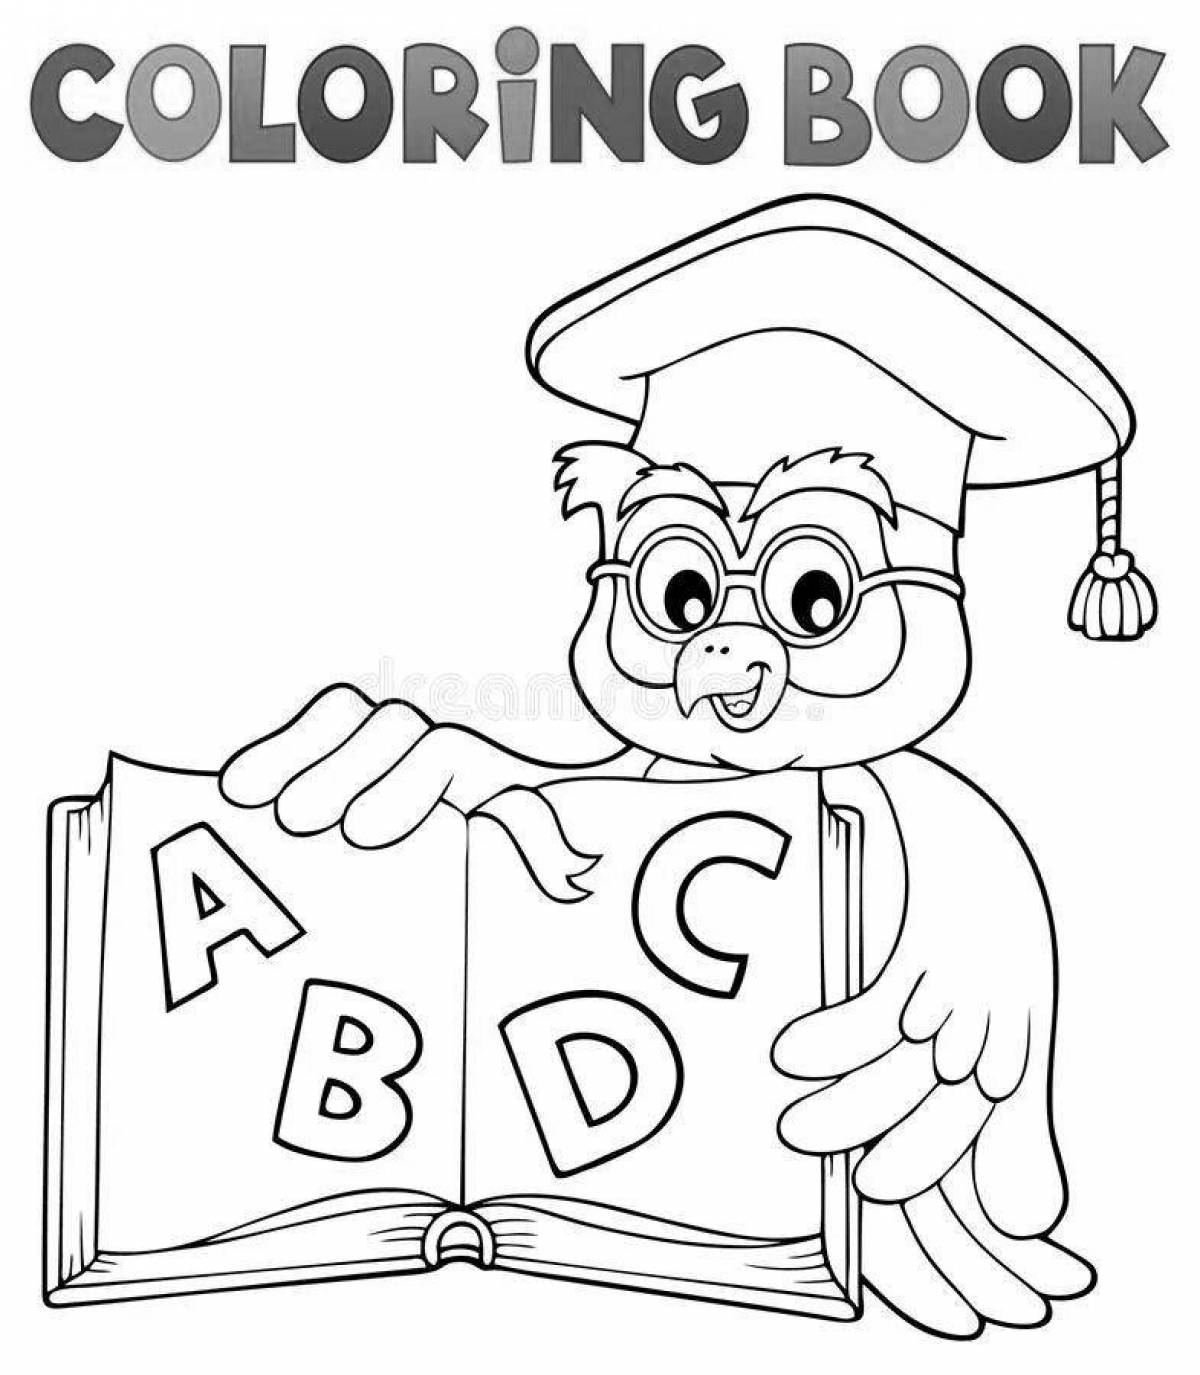 Exquisite scientific owl coloring book